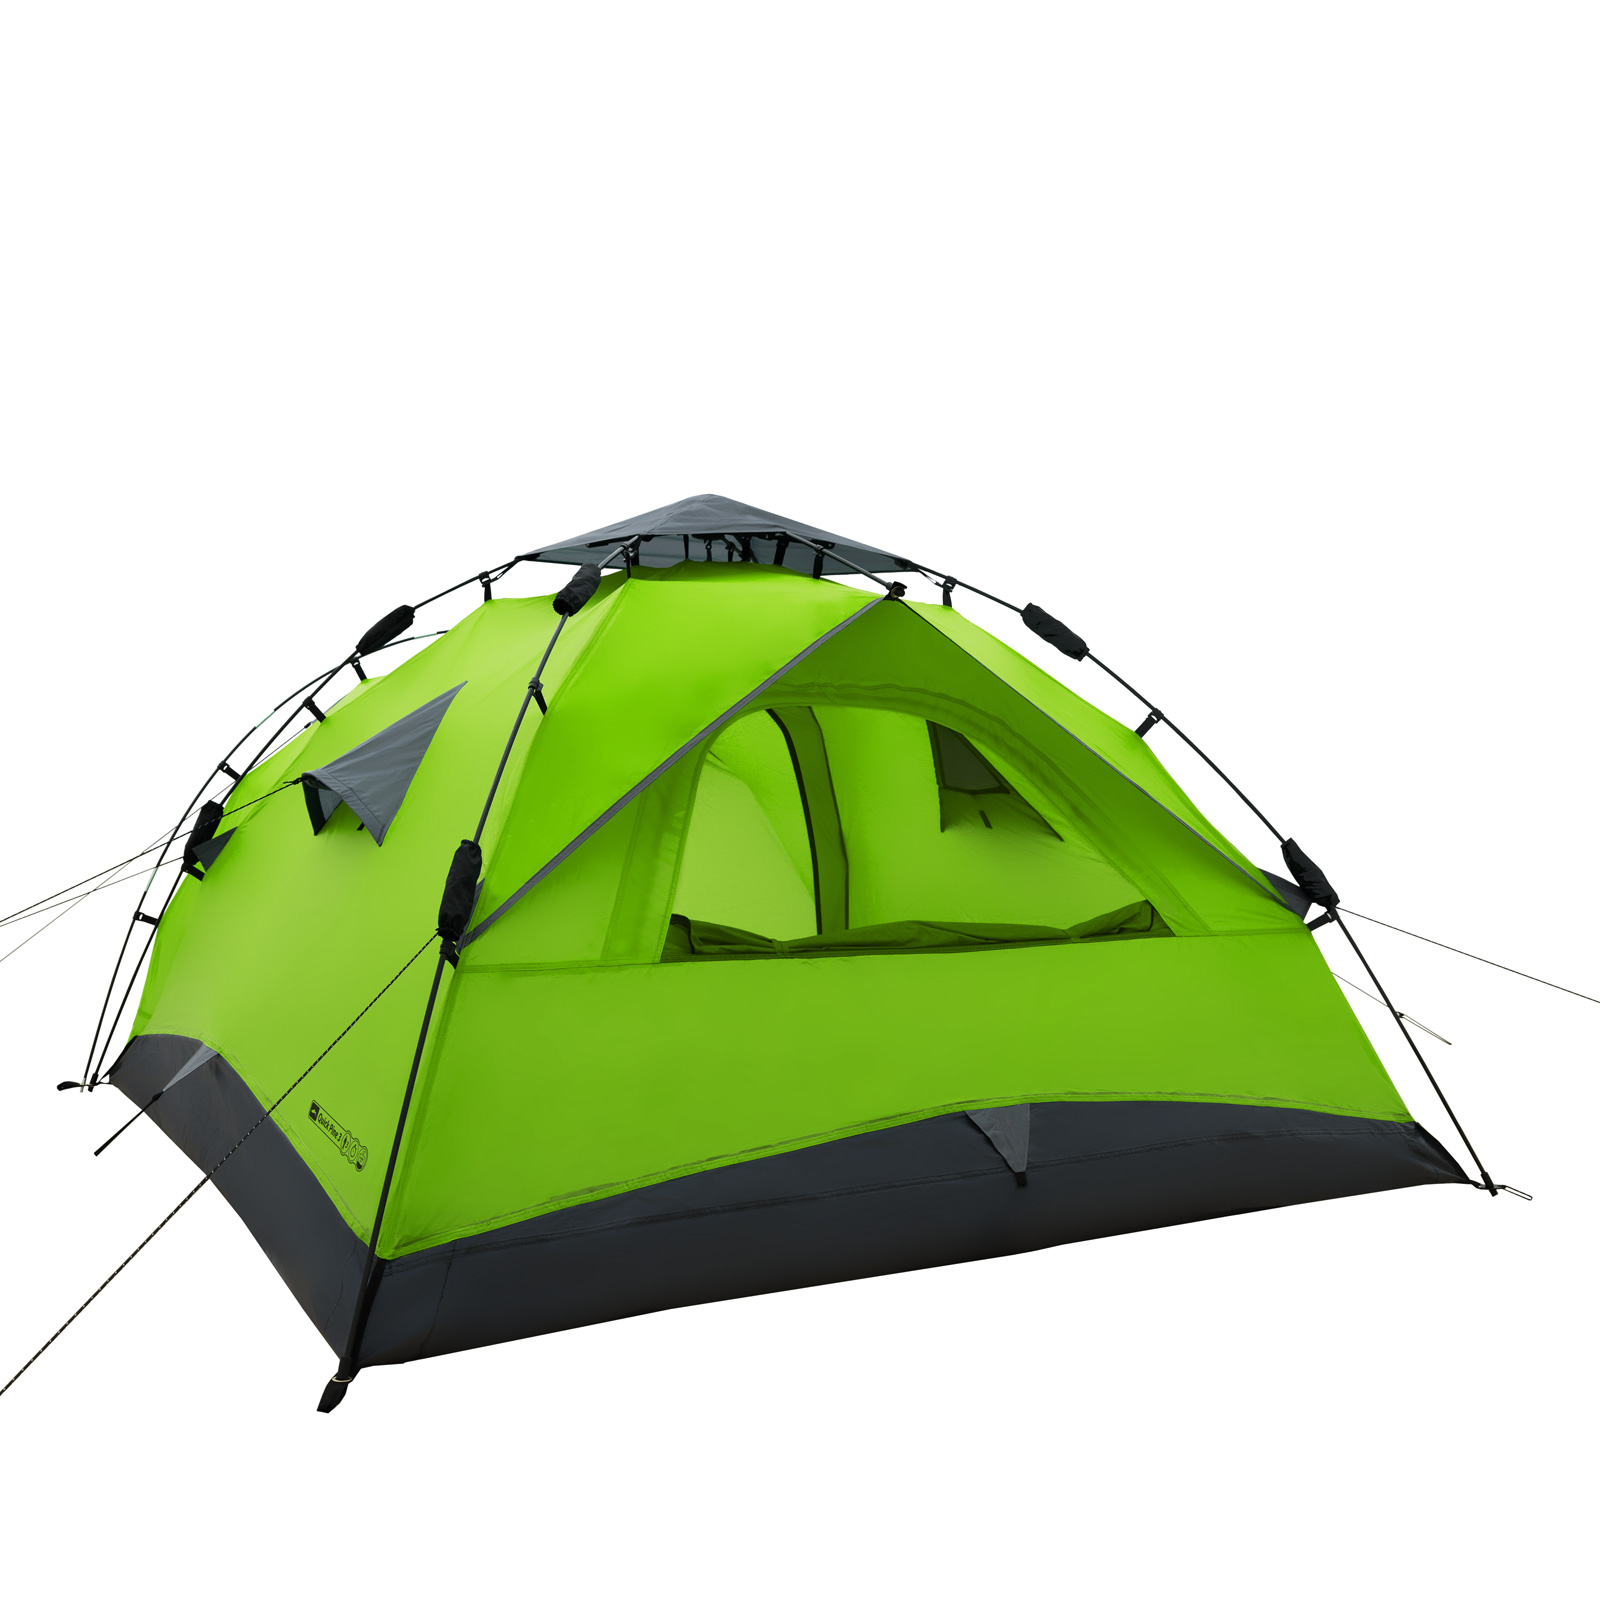 Sekundenzelt QEEDO Quick Pine 3 Personen Zelt Campingzelt Pop Up Zelt Wurfzelt